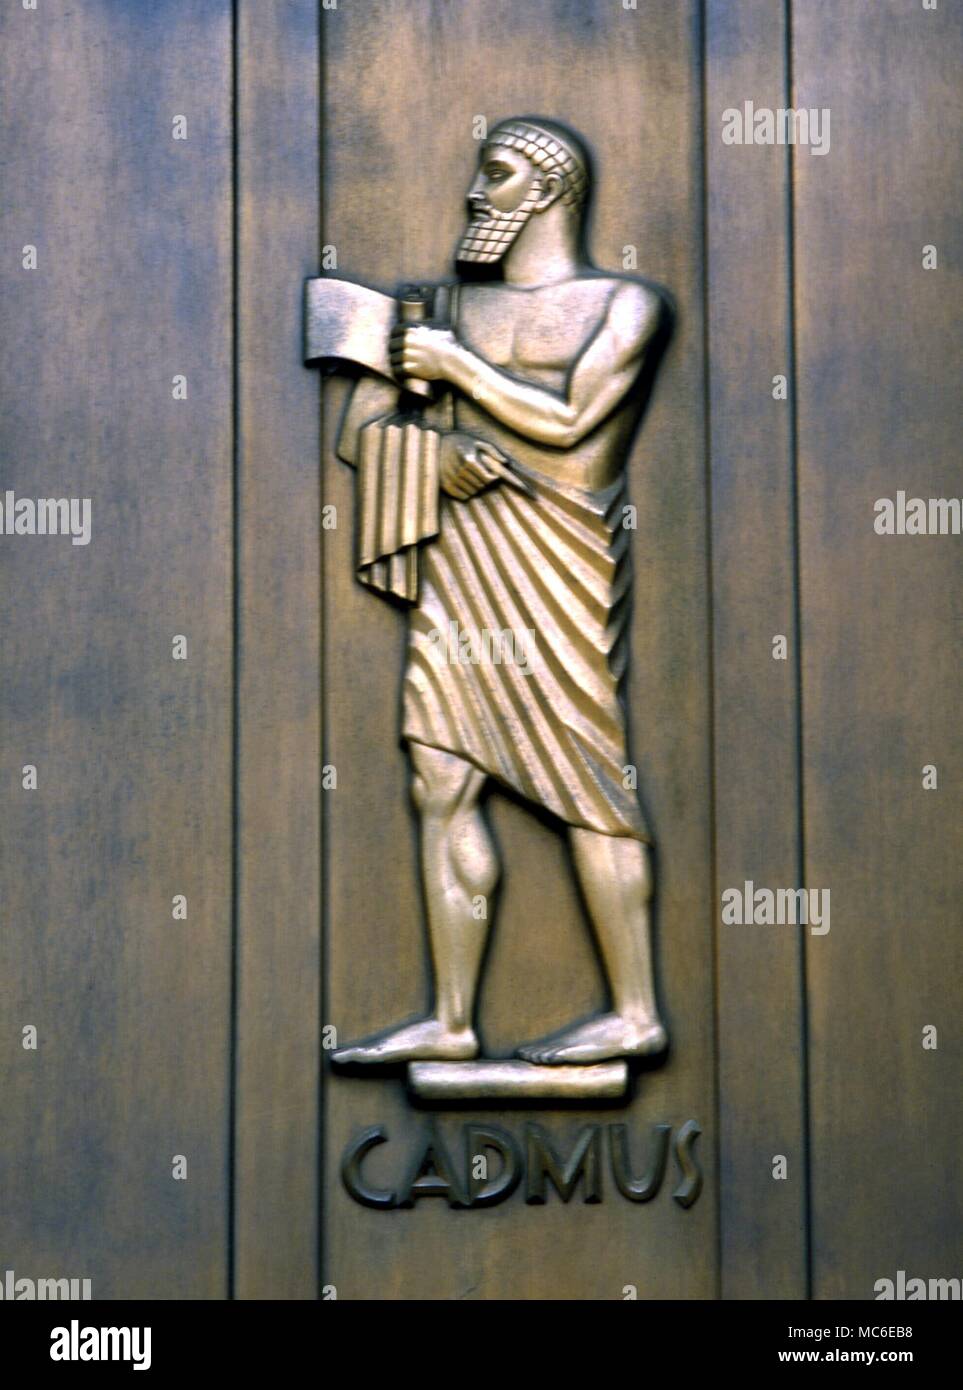 Griechische Mythologie: Cadmus Cadmus, der Held, der König, der sagte, ist in Europa von Phoenicia ein Alphabet aus 16 Buchstaben eingeführt zu haben. Er war schließlich in eine Schlange verwandelt. Stockfoto